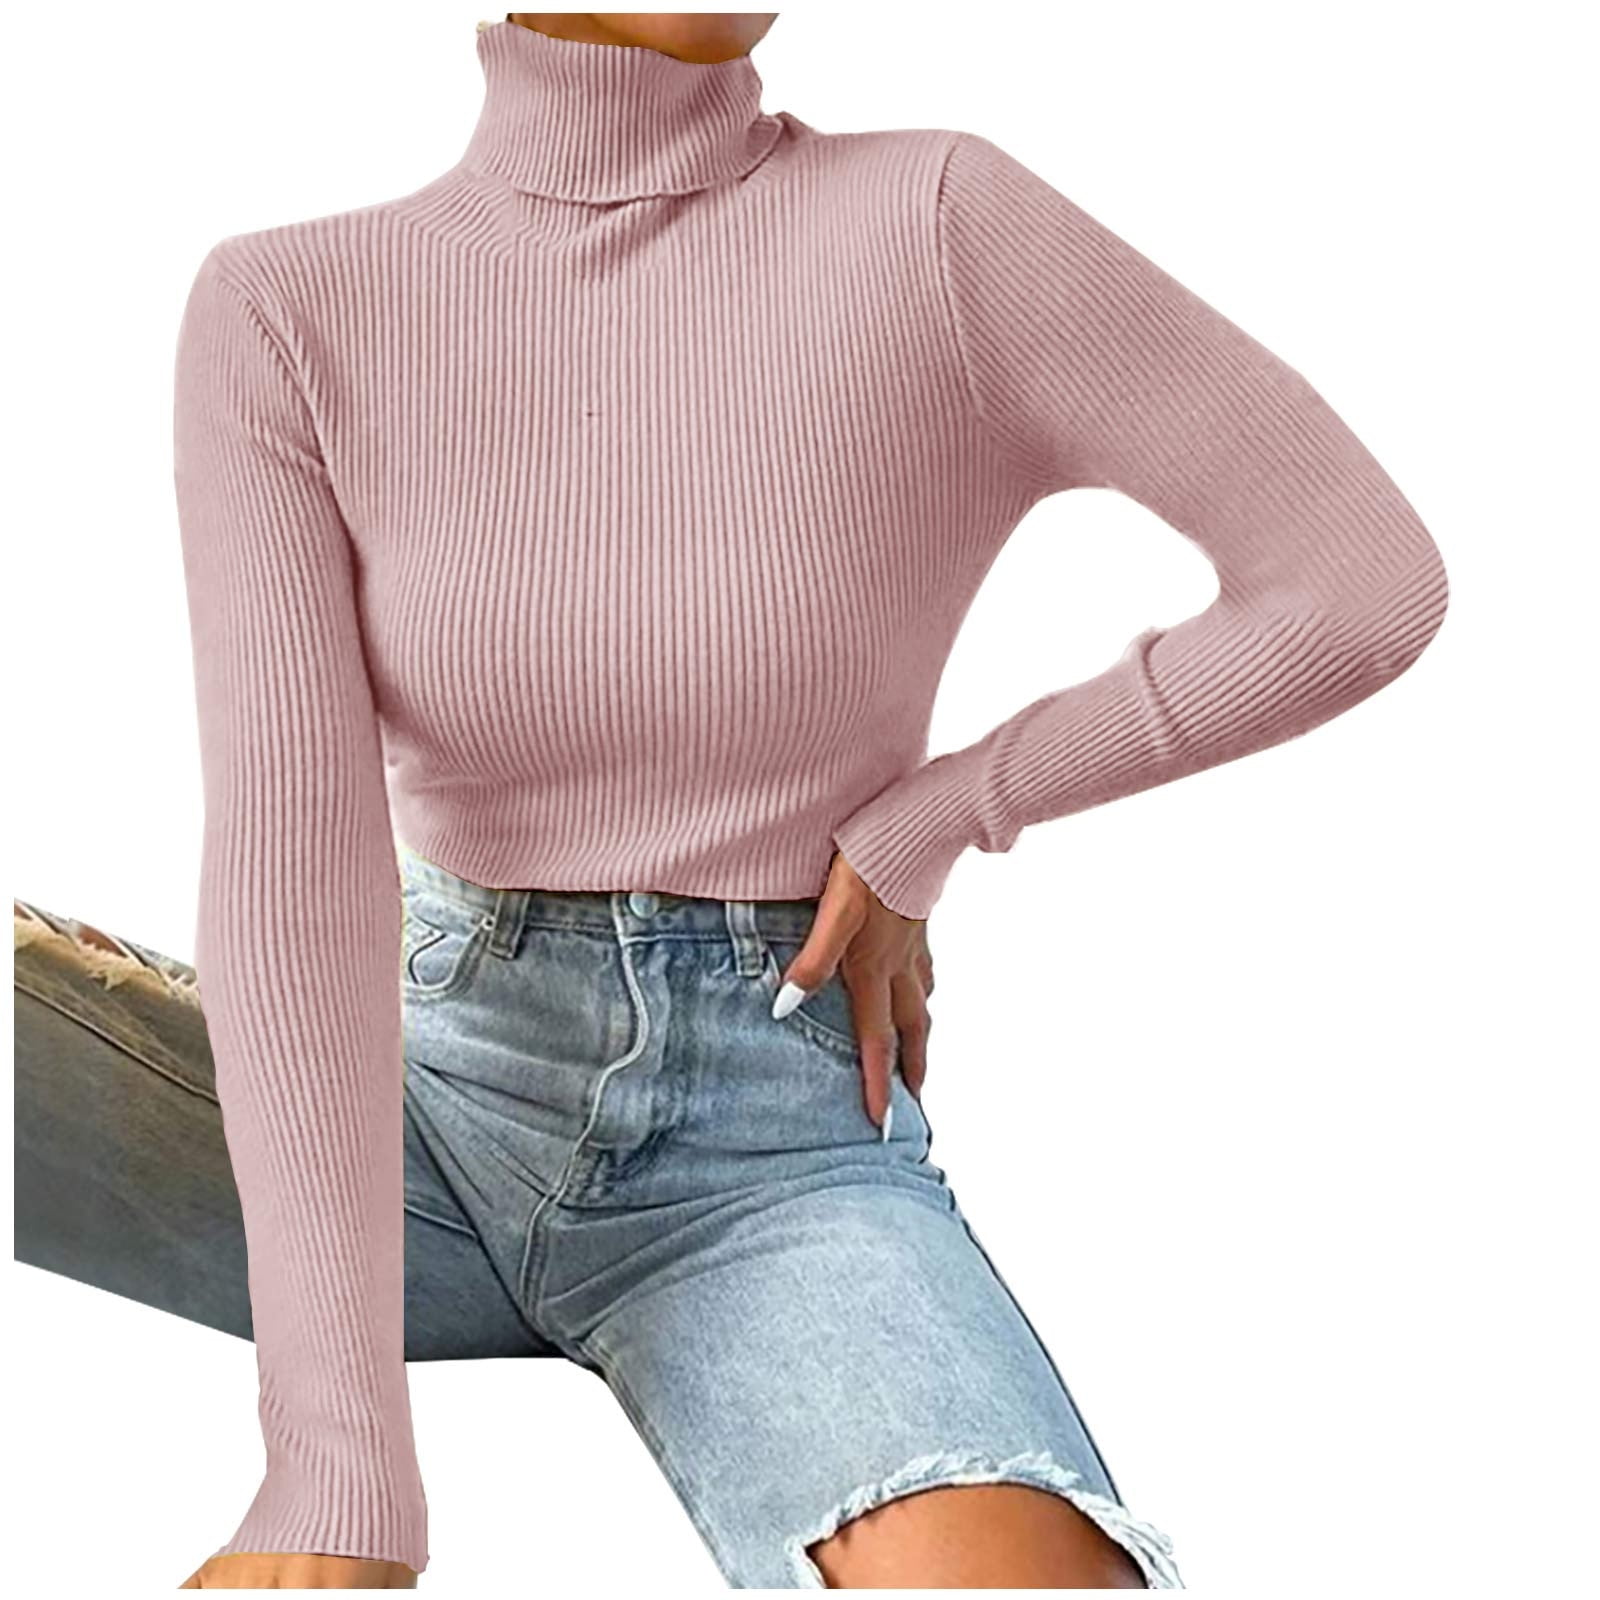  Women Fitting Basic Ribbed Turtleneck Sweater Soft